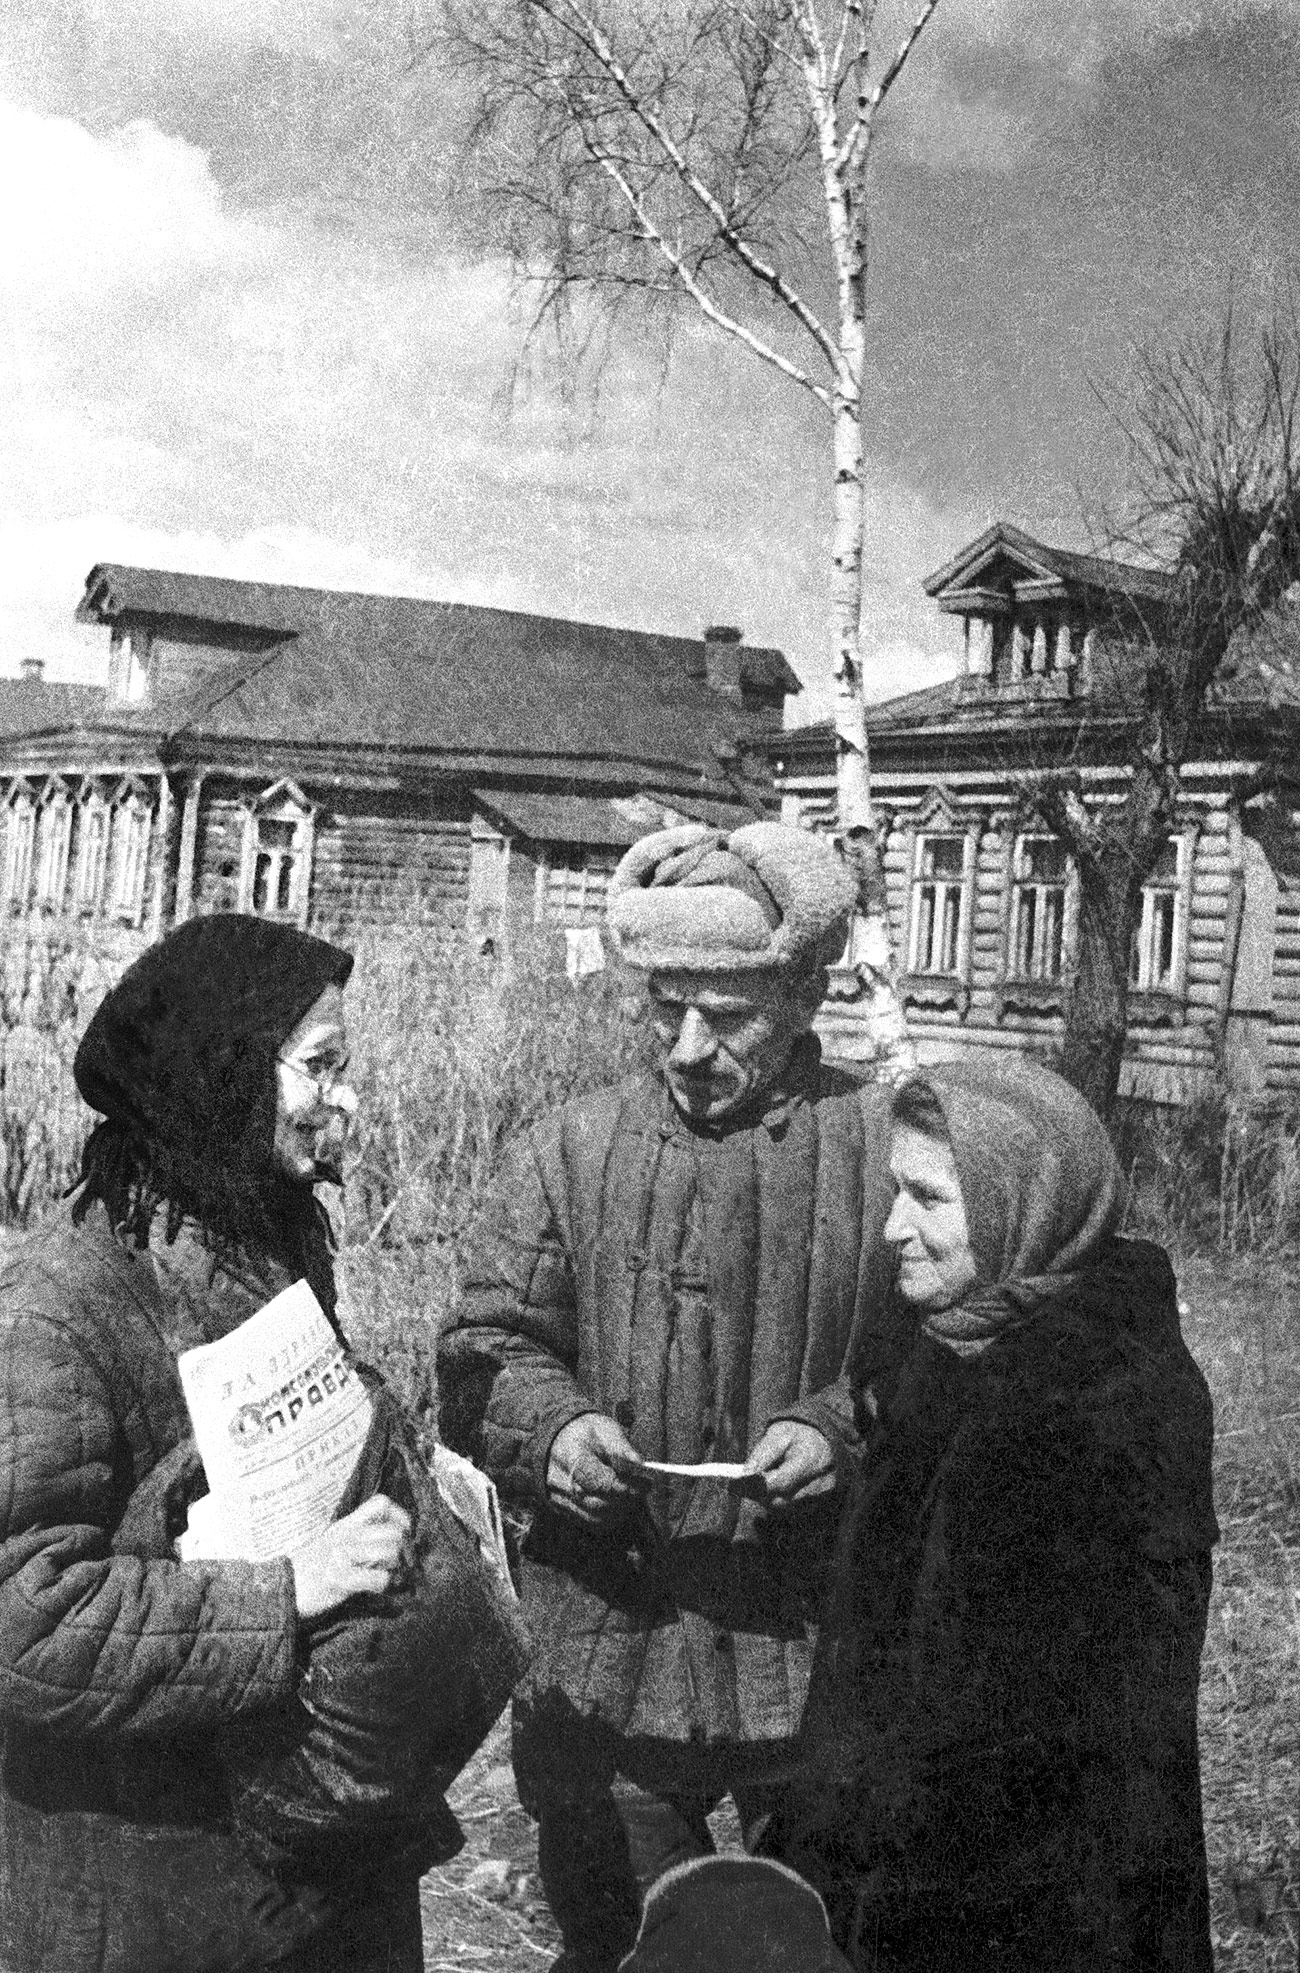 Mnogi rajoni koji se danas nalaze blizu centra Moskve bili su prepuni drvenih kuća i nalikovali su na selo sve do 1960-ih. Na fotografiji je prikazano nekadašnje selo Vihino, sada rajon Moskve.